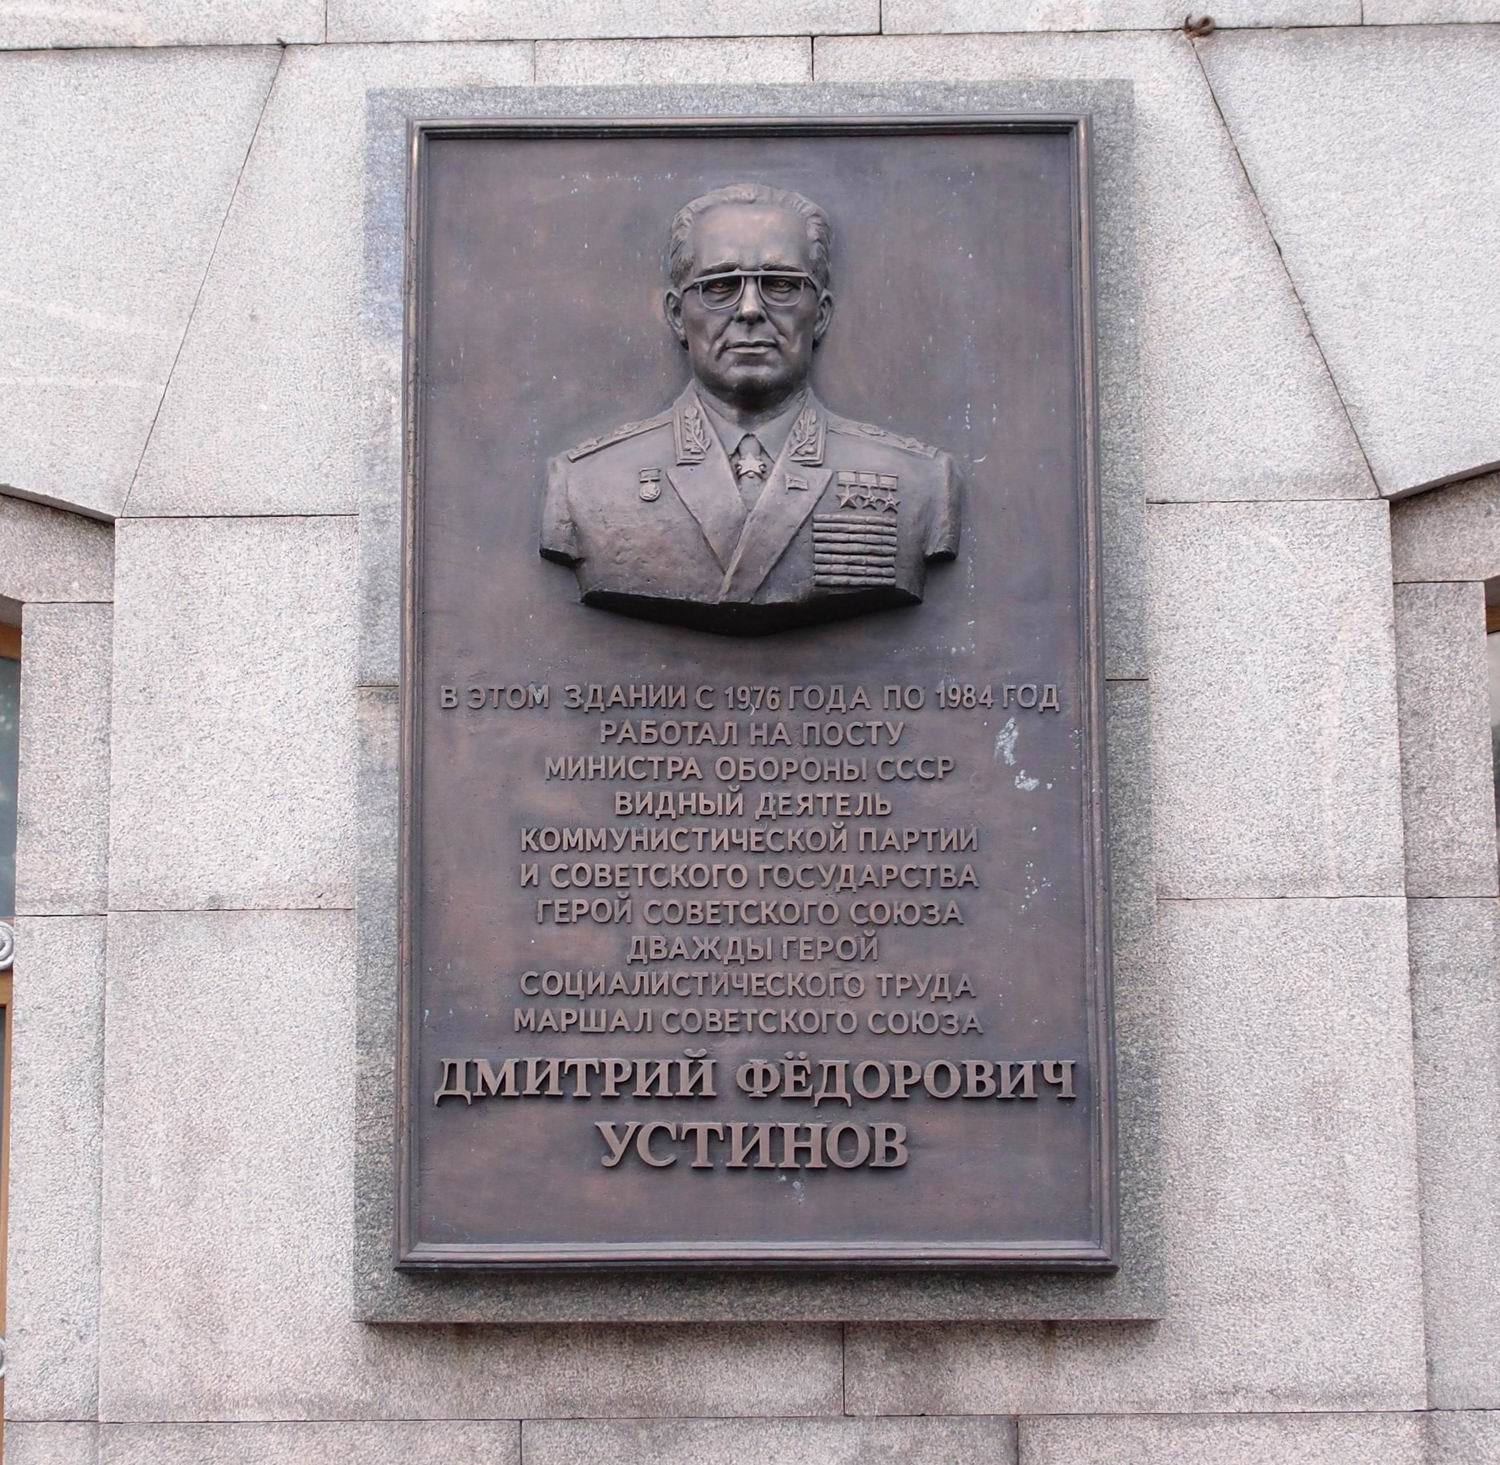 Мемориальная доска Устинову Д.Ф. (1908–1984), на улице Знаменка, дом 19. Нажмите левую кнопку мыши чтобы увидеть вариант до 2014.